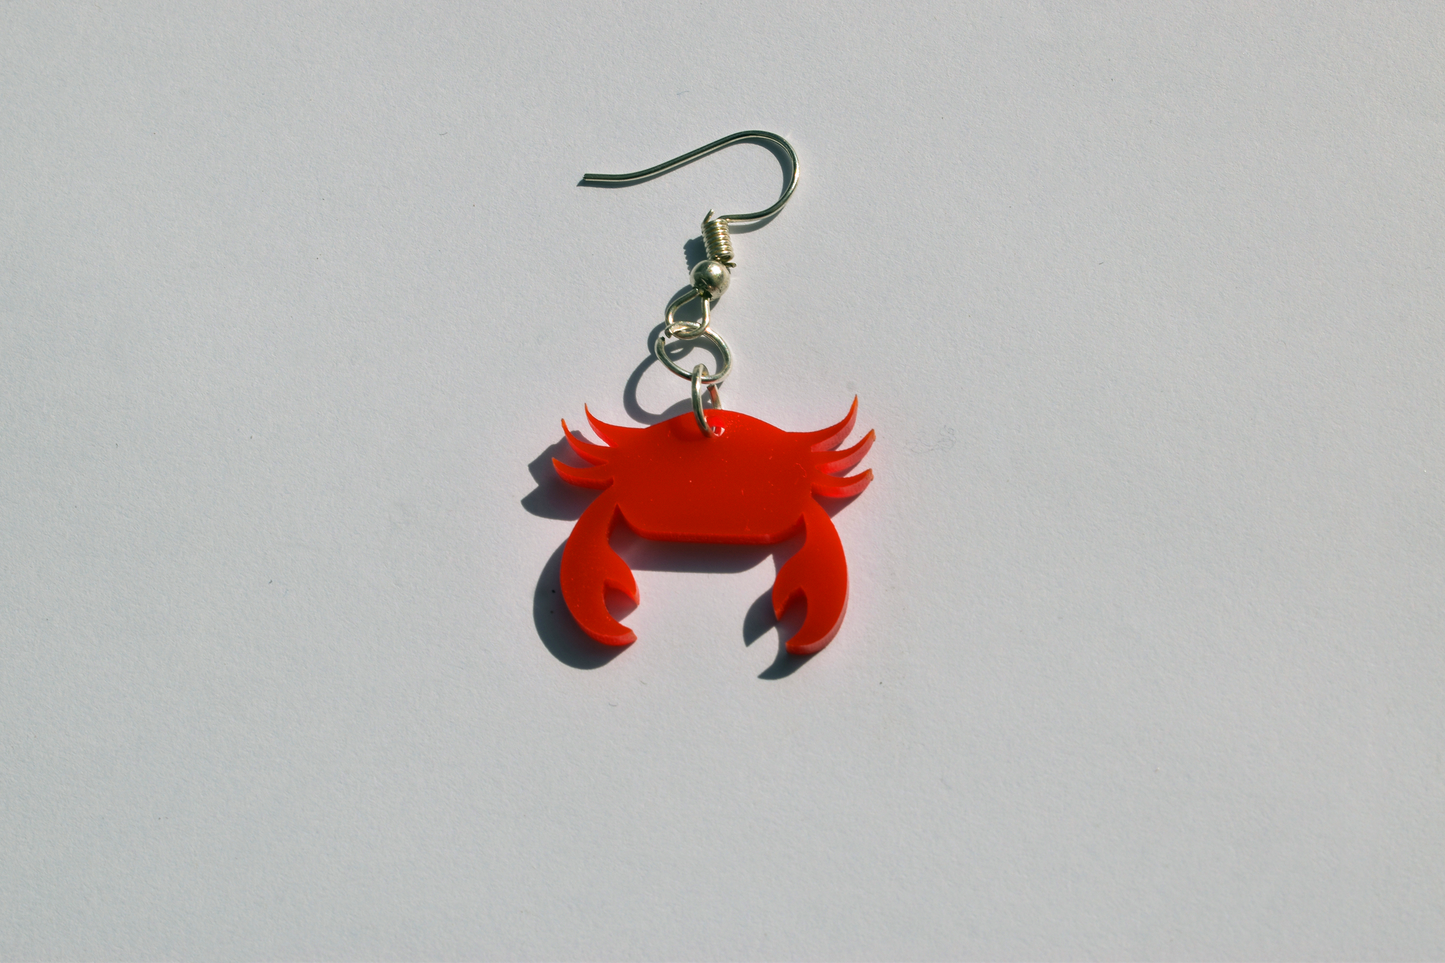 Crab Earrings